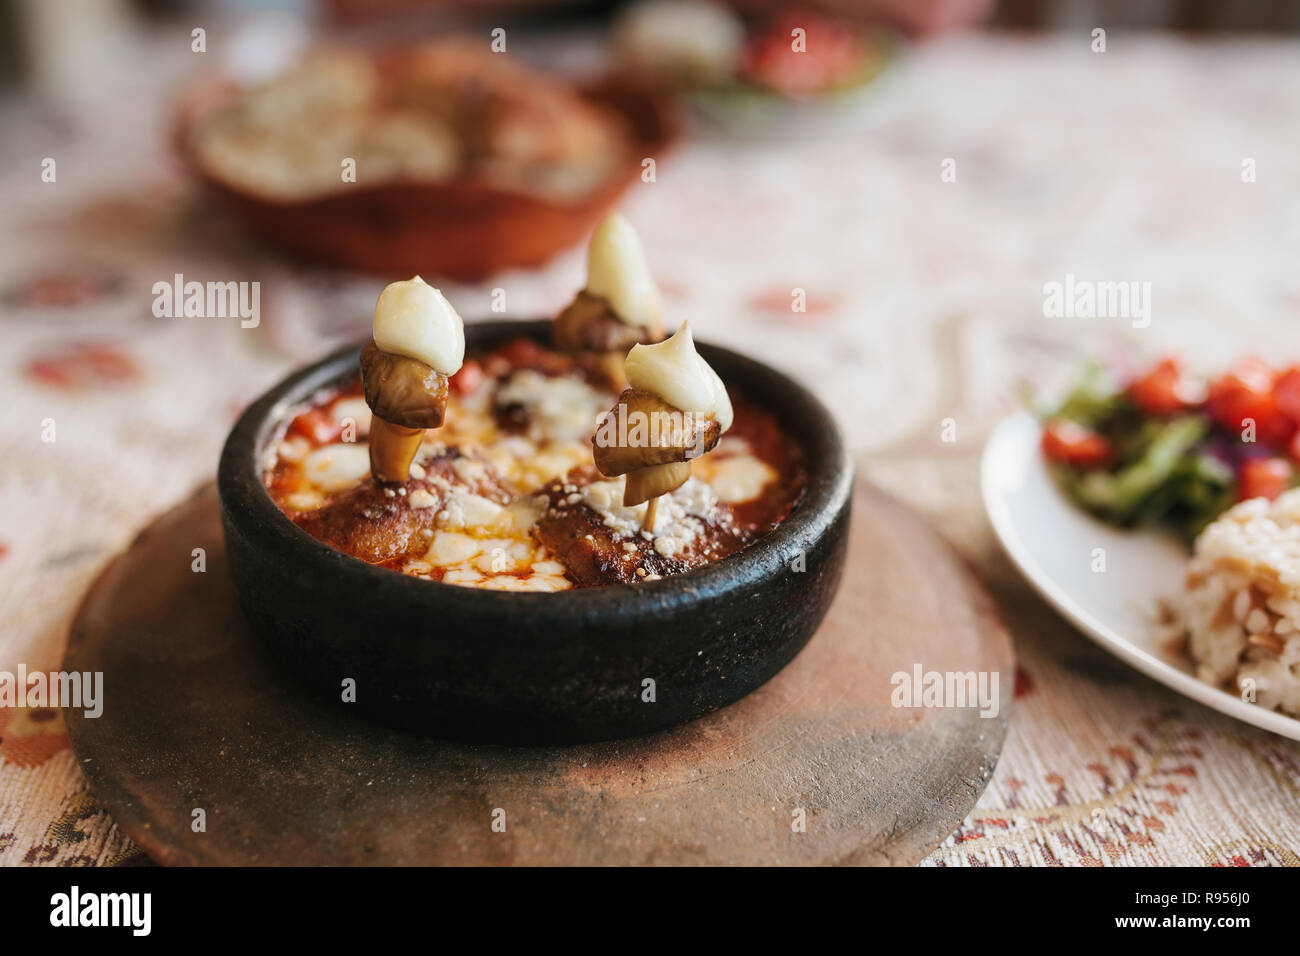 Close-up-Teller mit Pilzen und weißer Soße in der Schüssel auf Holz Stativ. Menü im Restaurant. Traditionelle türkische Speisen. Stockfoto